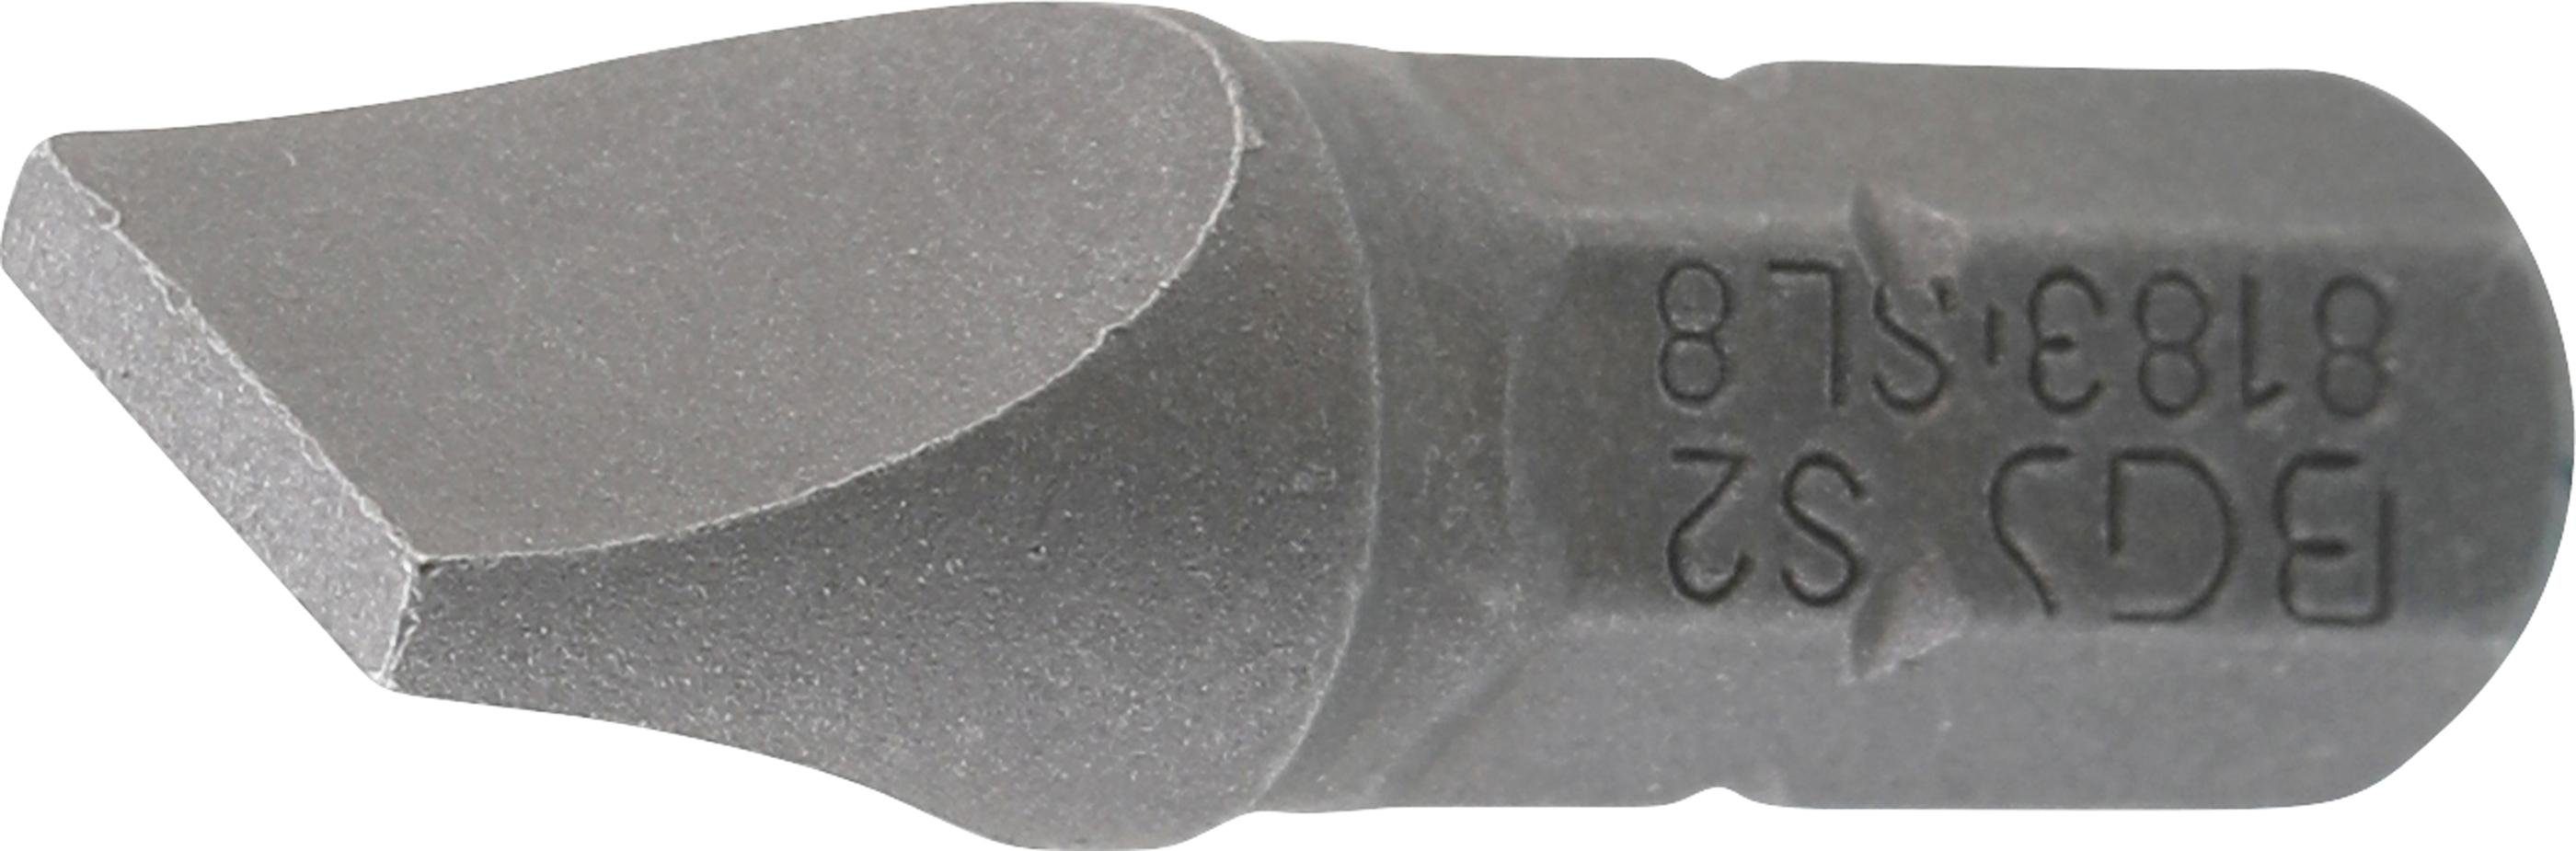 BGS technic Bit-Schraubendreher Bit, Antrieb Außensechskant 6,3 mm (1/4), Schlitz 8 mm